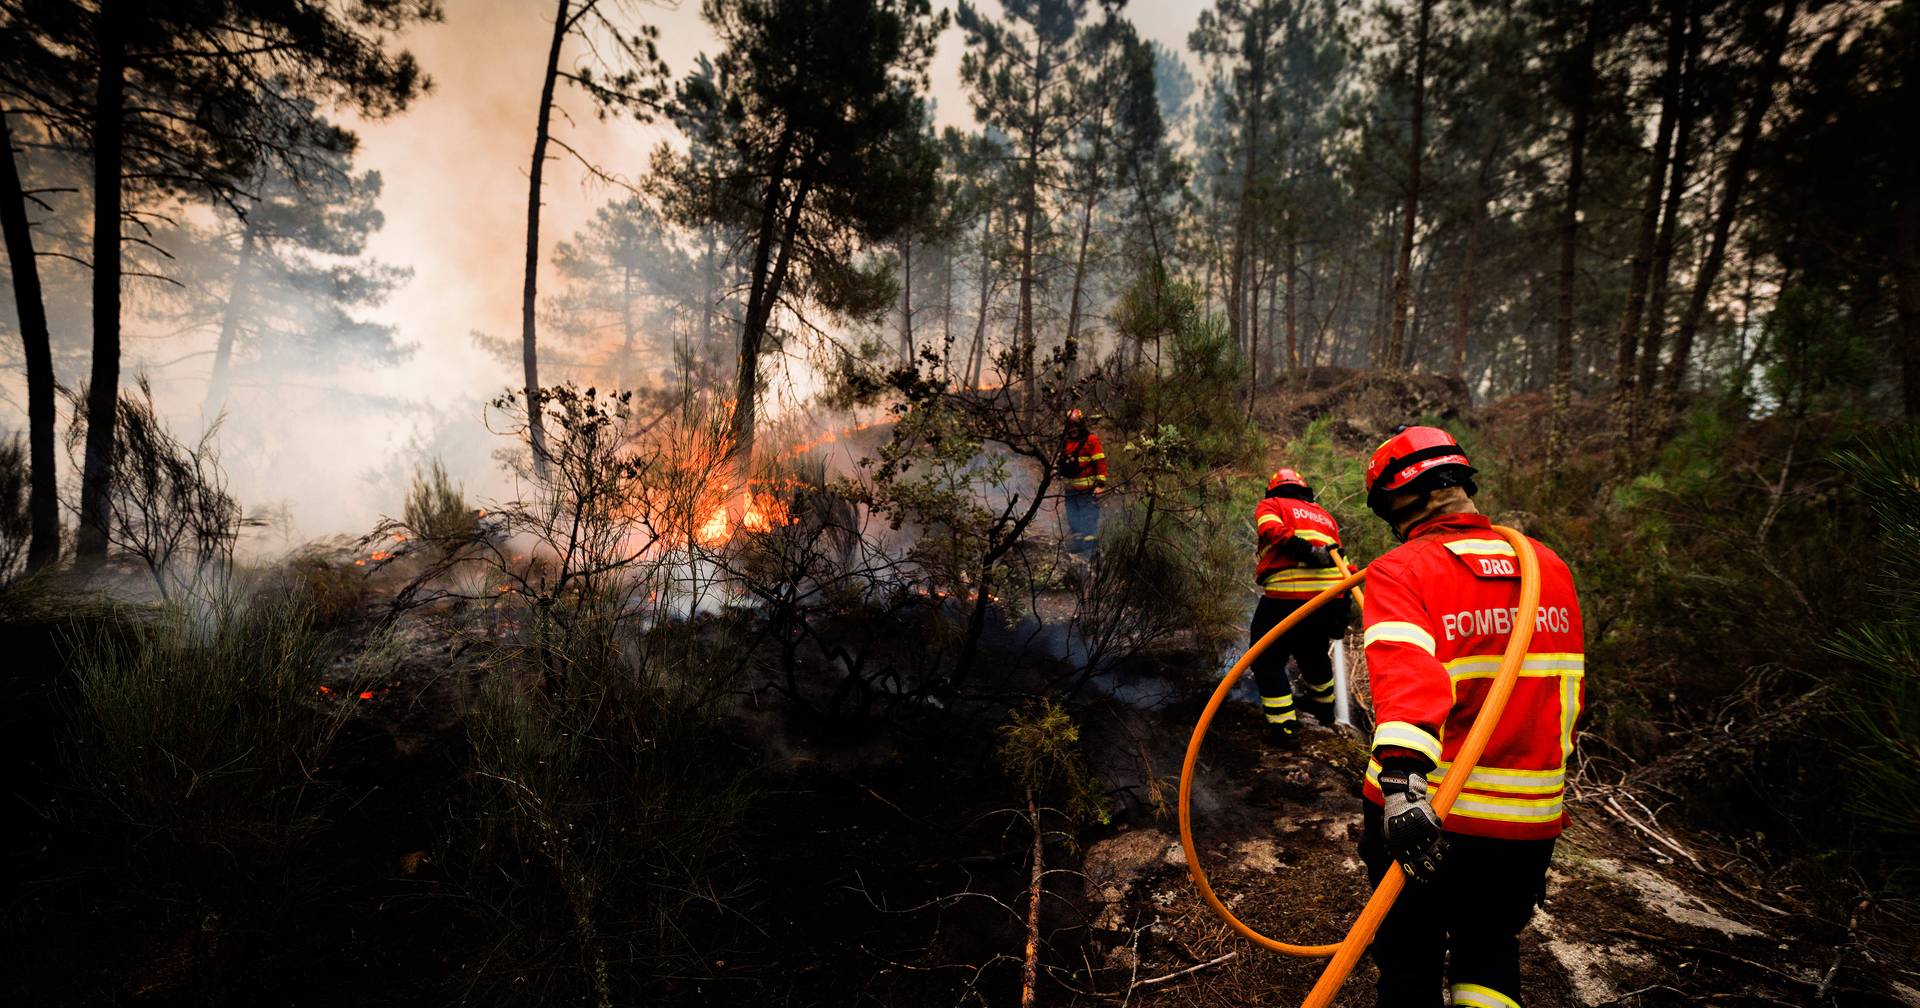 Noventa concelhos do interior Norte e Centro continuam em risco máximo de incêndio